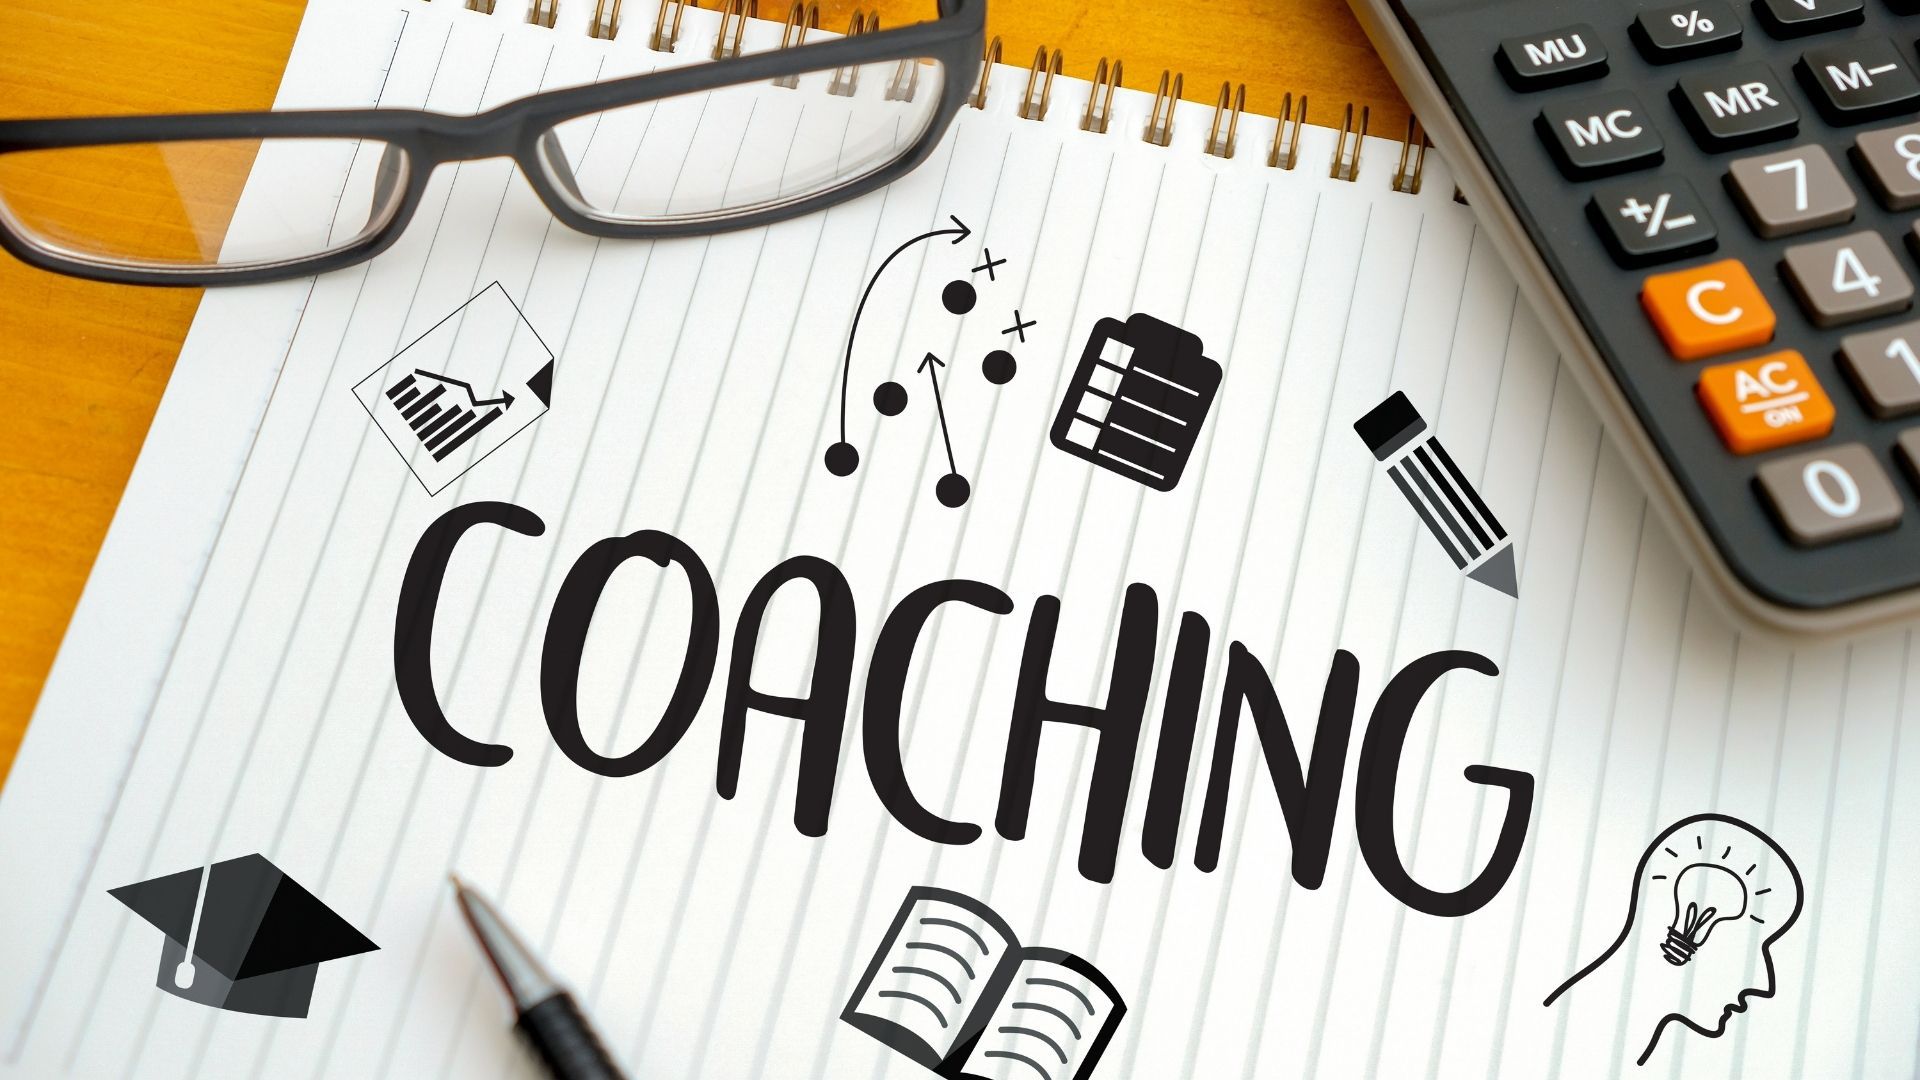 coaching in education